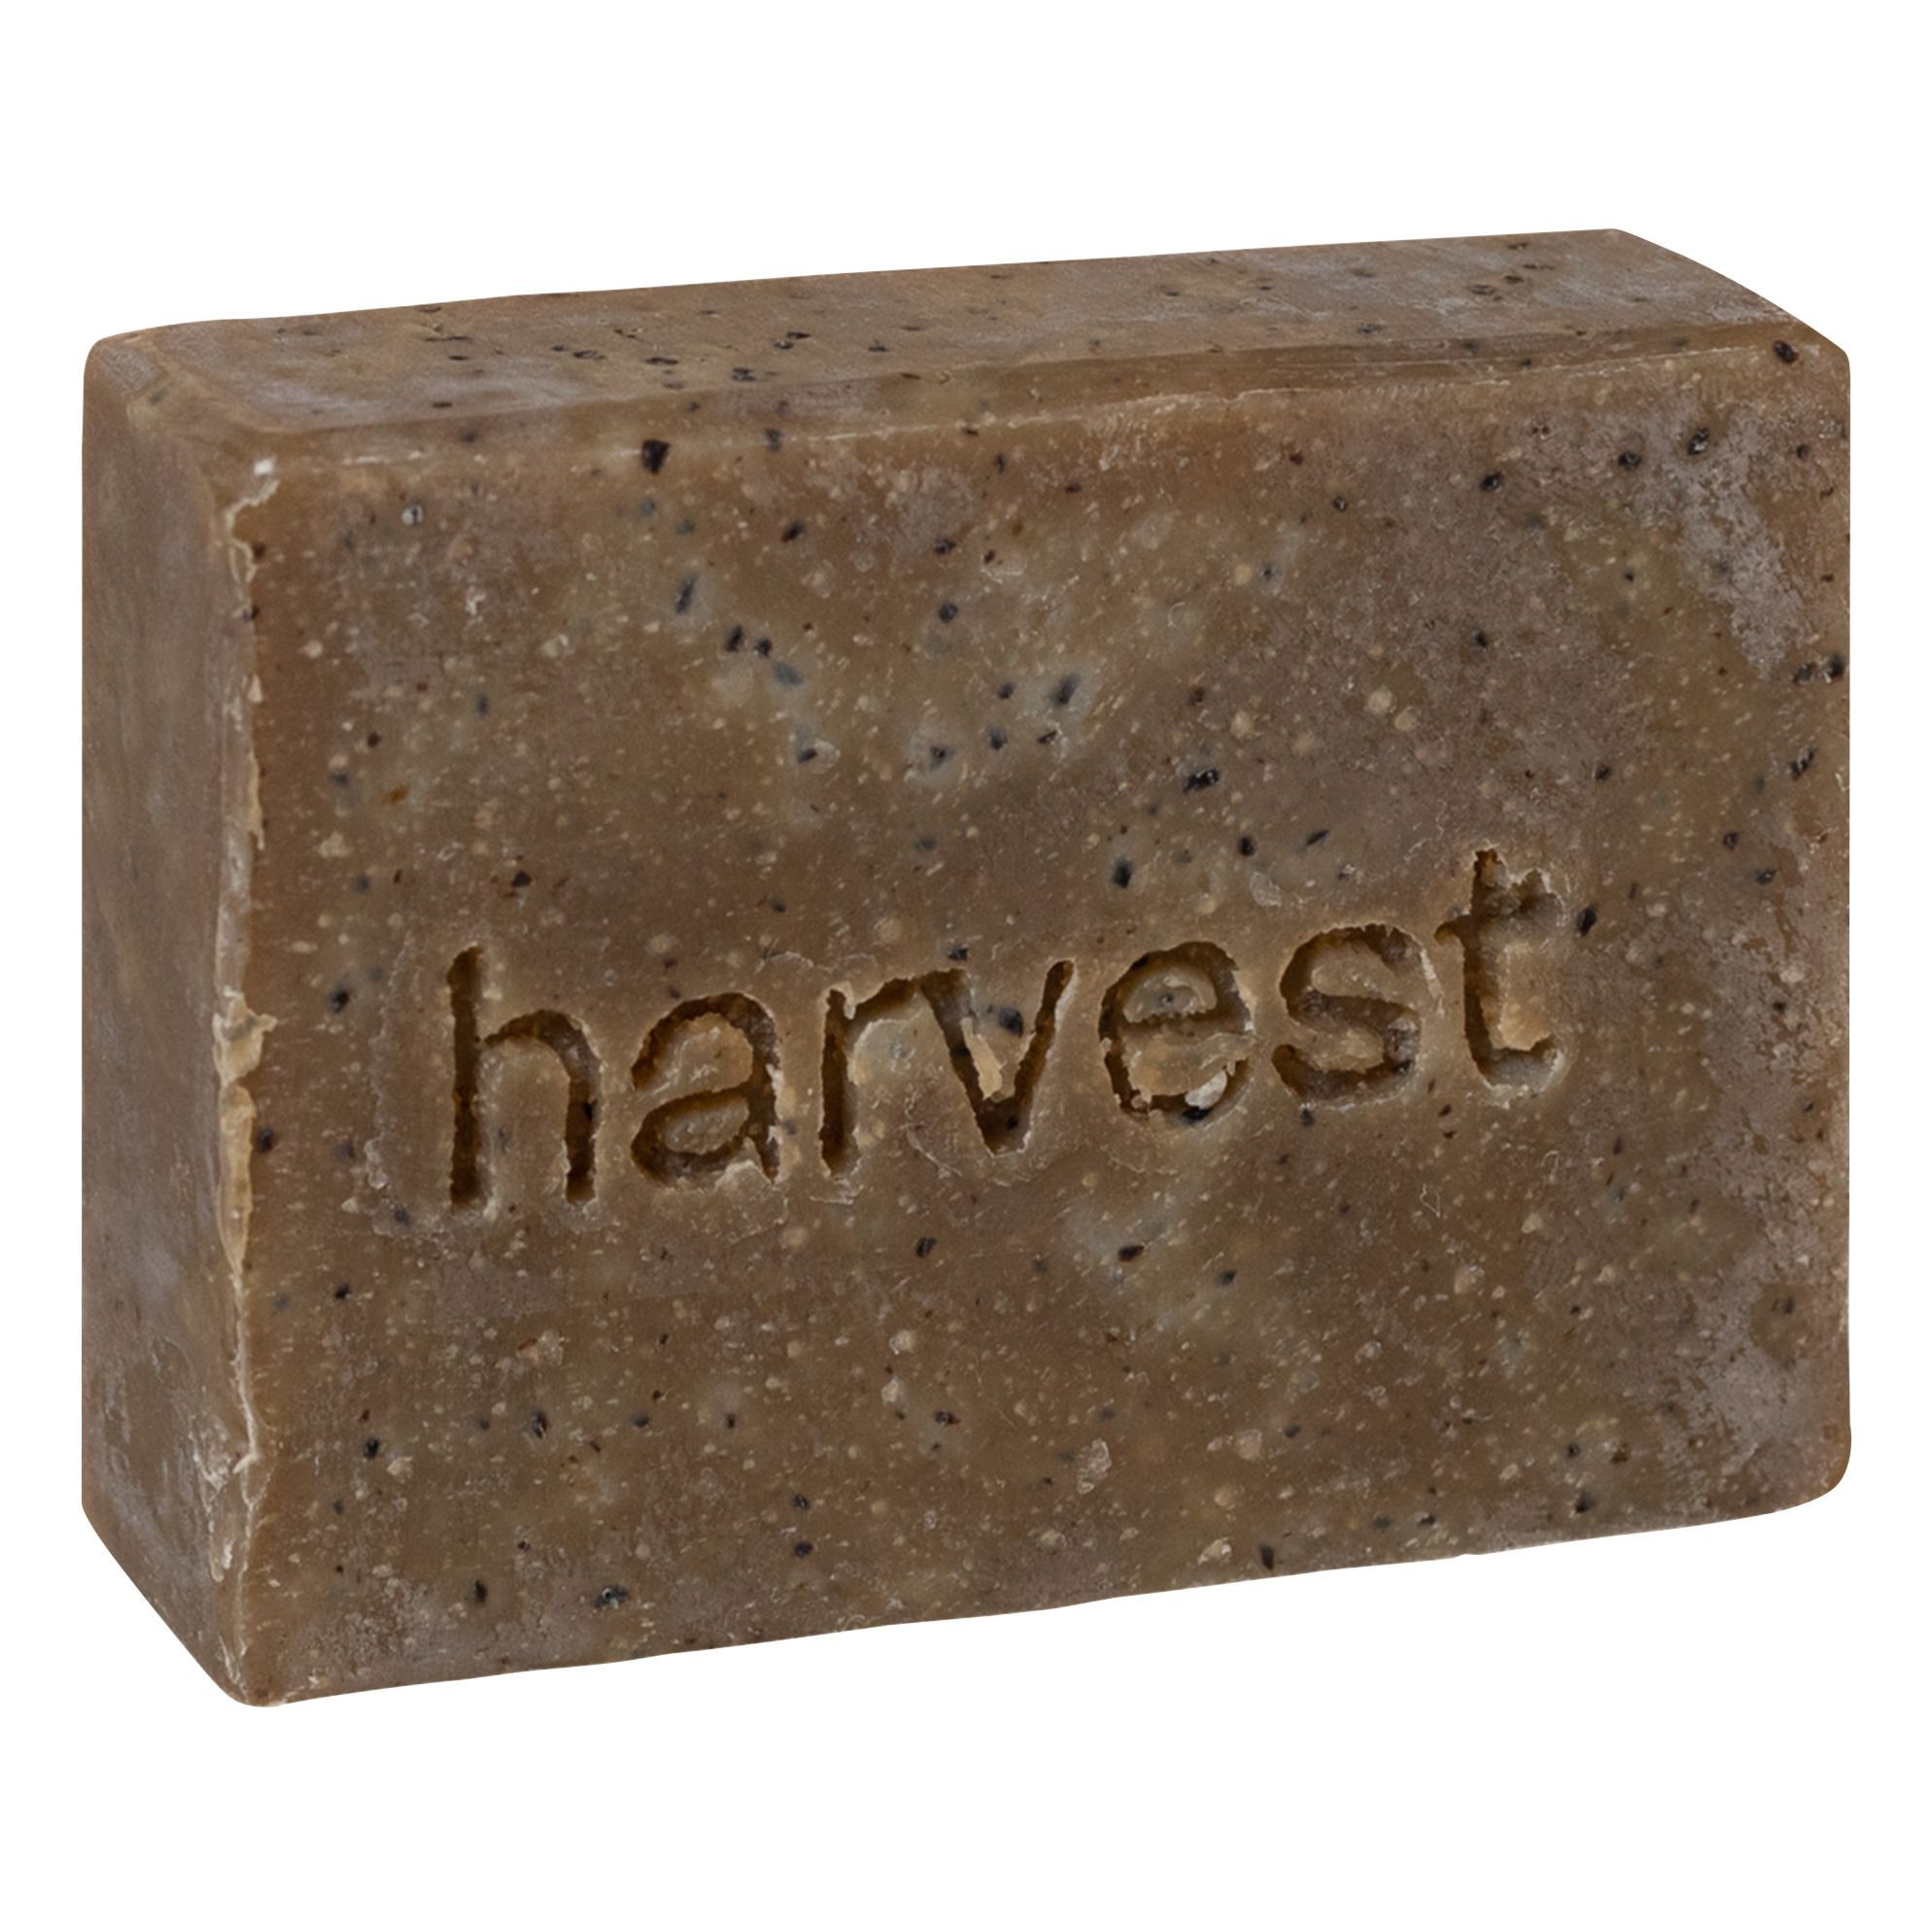 Harvest Skincare - Savon exfoliant - 100 g - Transparent